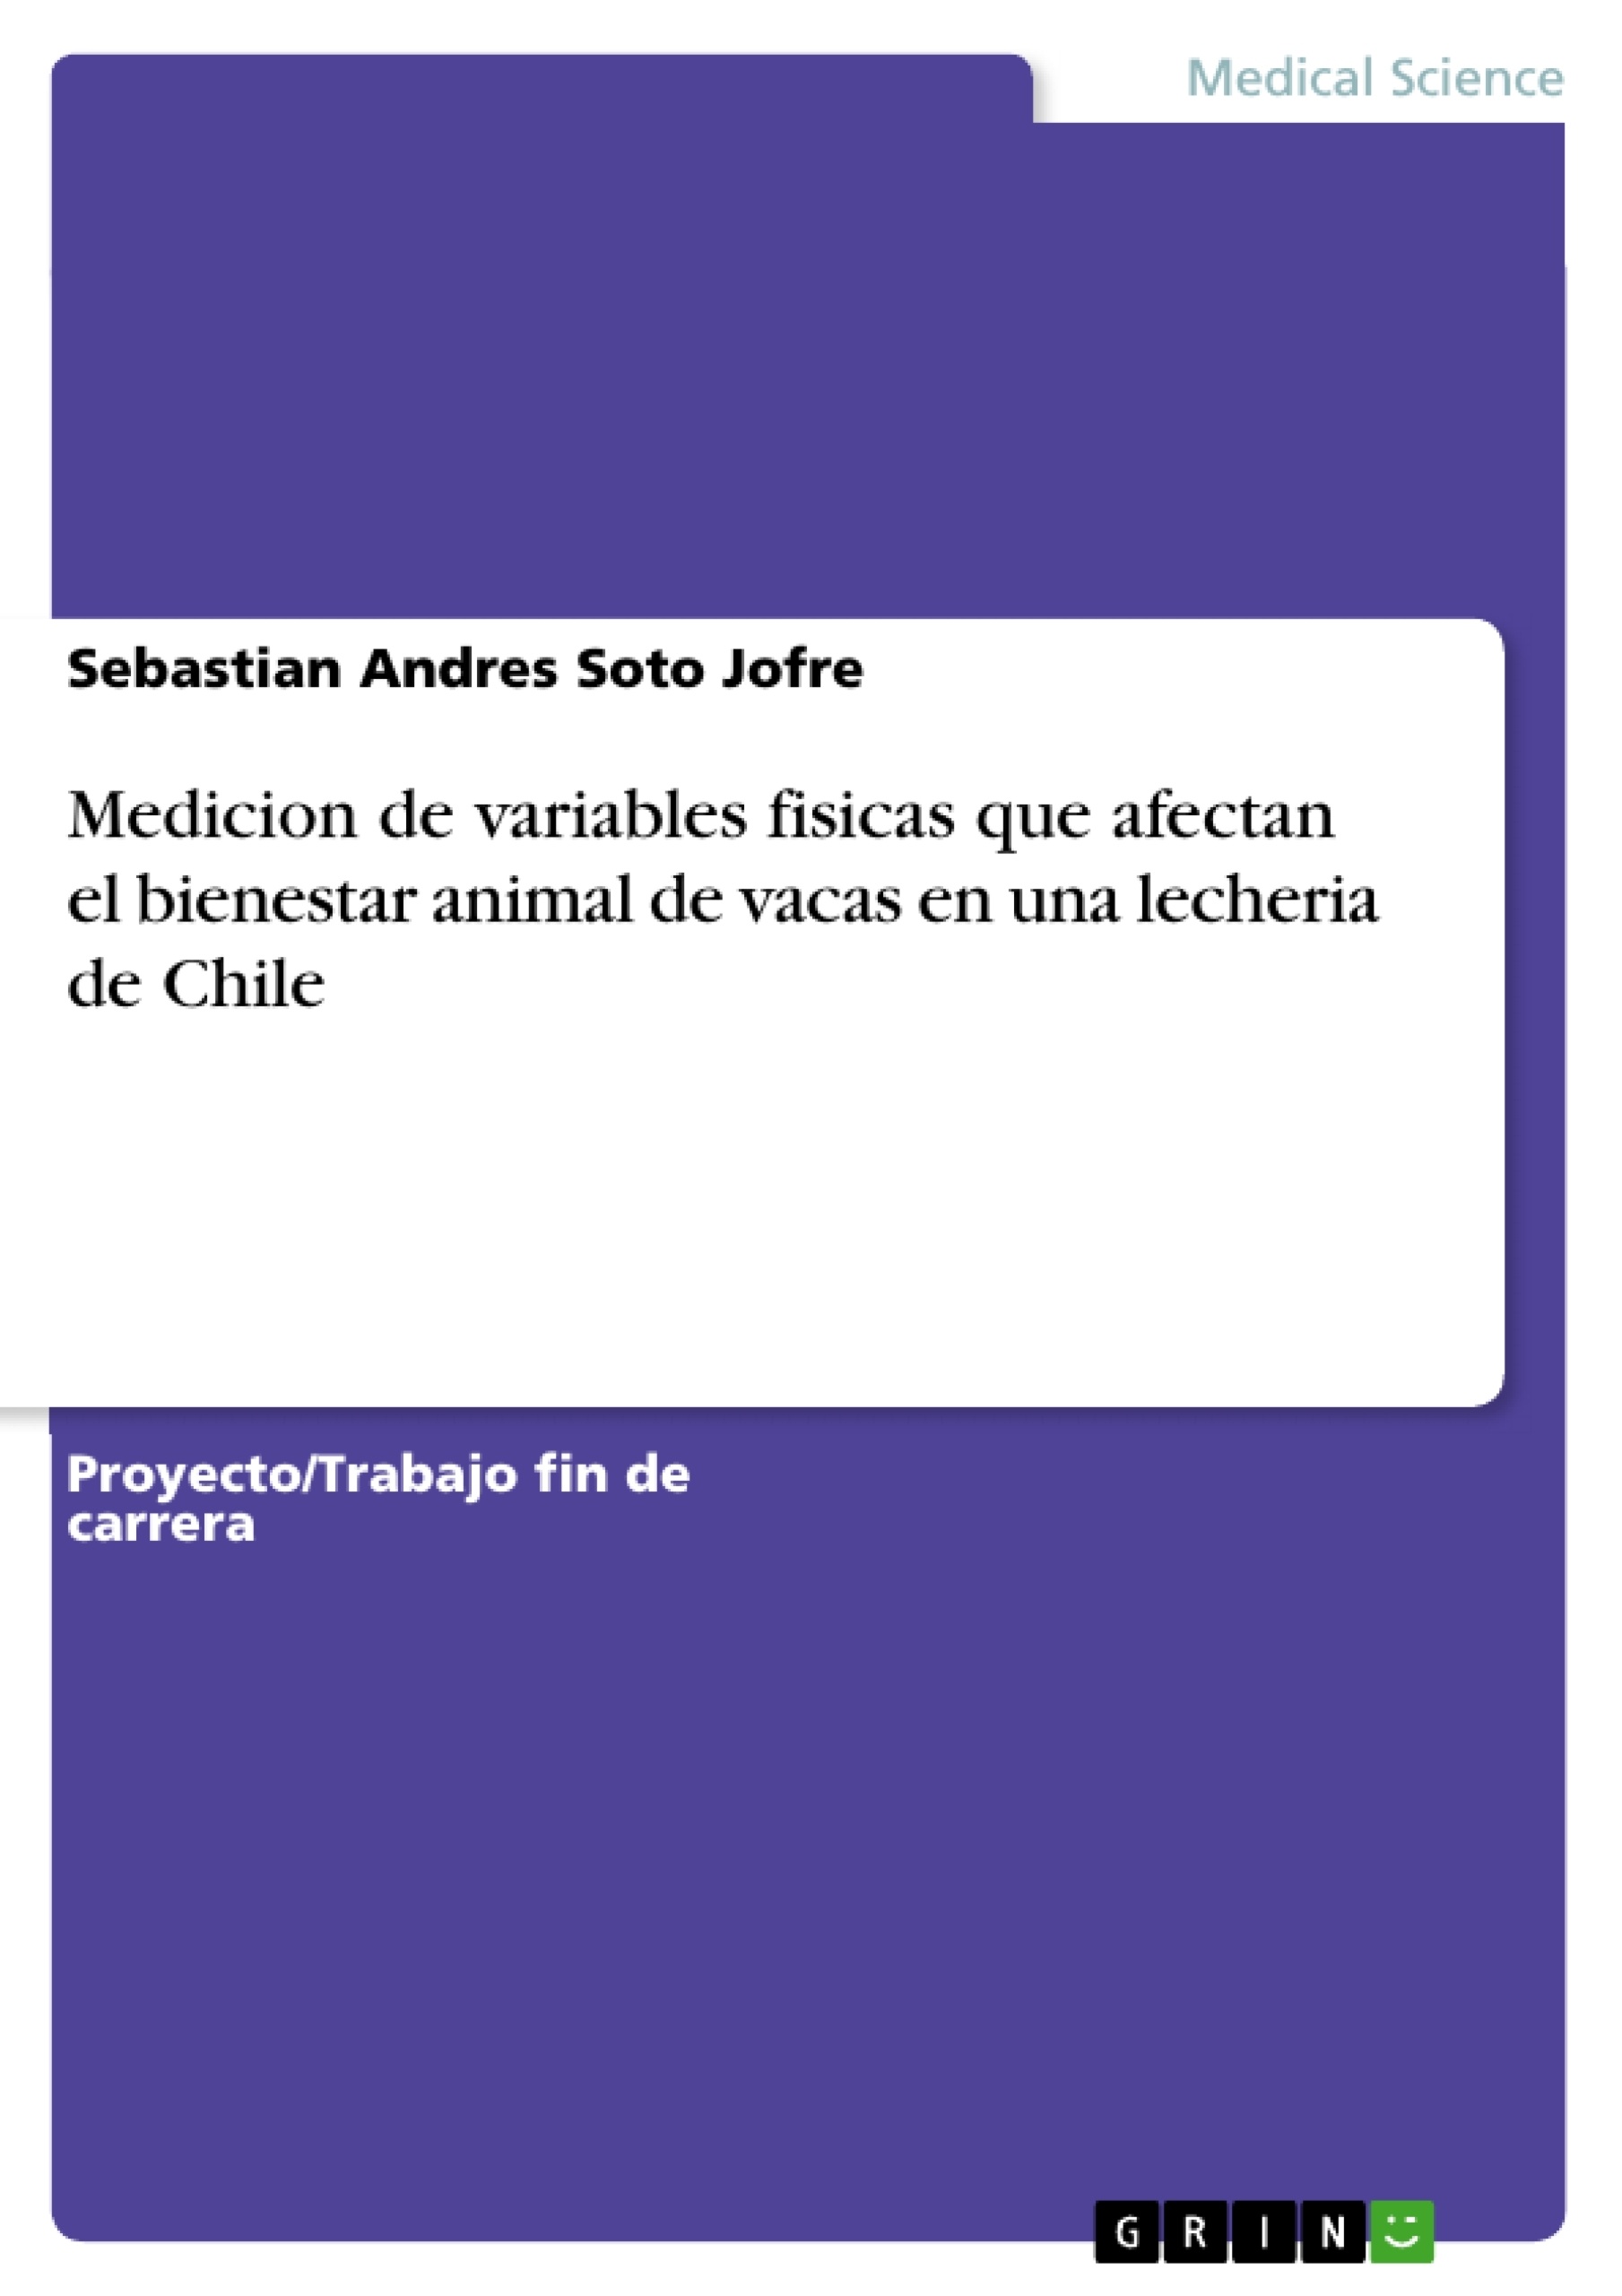 Titre: Medicion de variables fisicas que afectan el bienestar animal de vacas en una lecheria de Chile